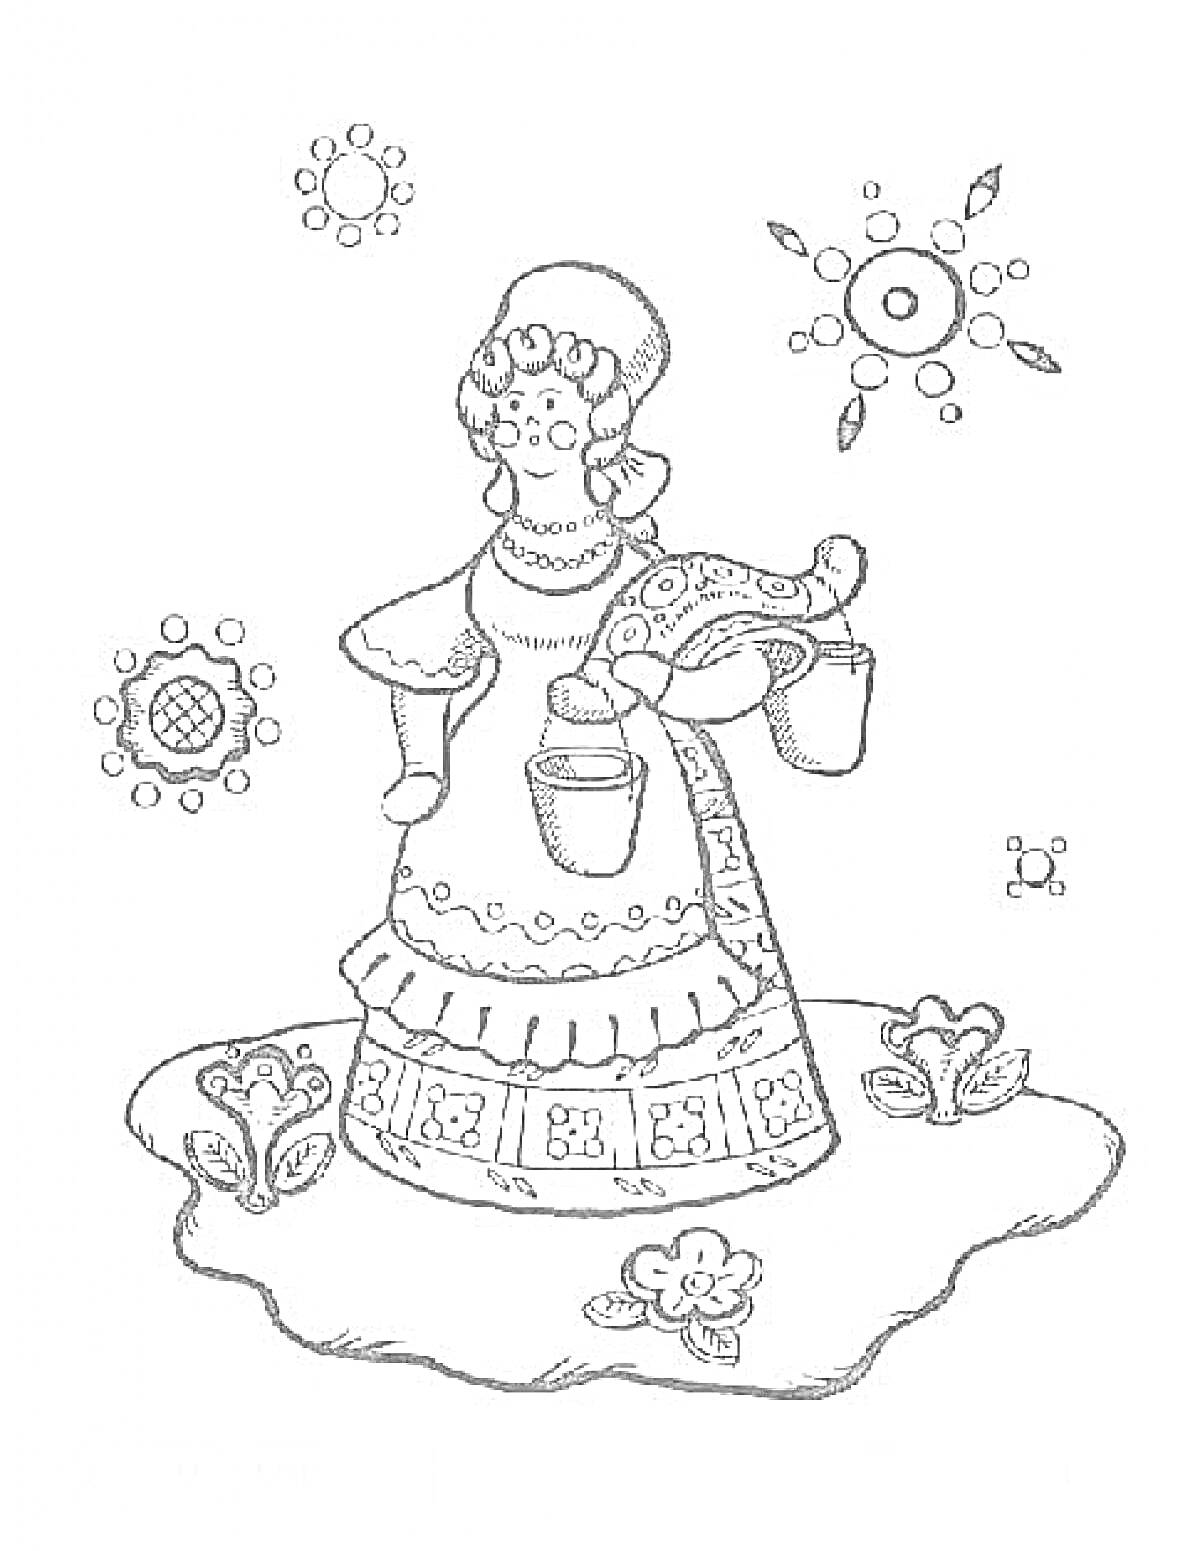 Женщина в традиционной одежде, с чашками на коромысле, цветы, декоративные орнаменты